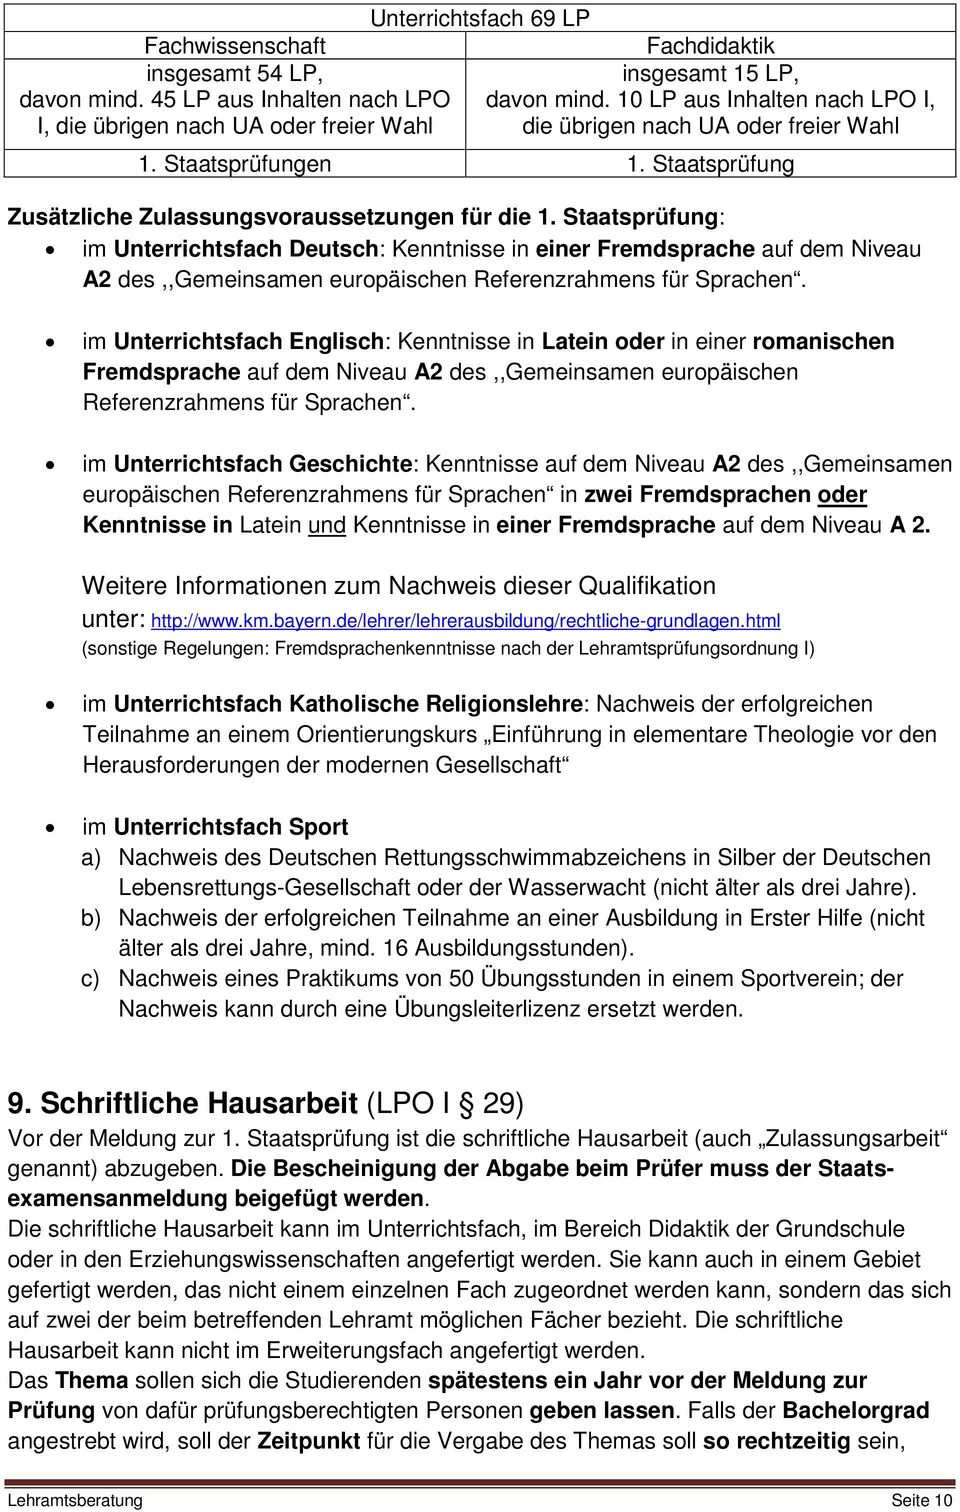 Staatsprüfung: im Unterrichtsfach Deutsch: Kenntnisse in einer Fremdsprache auf dem Niveau A2 des,,gemeinsamen europäischen Referenzrahmens für Sprachen.